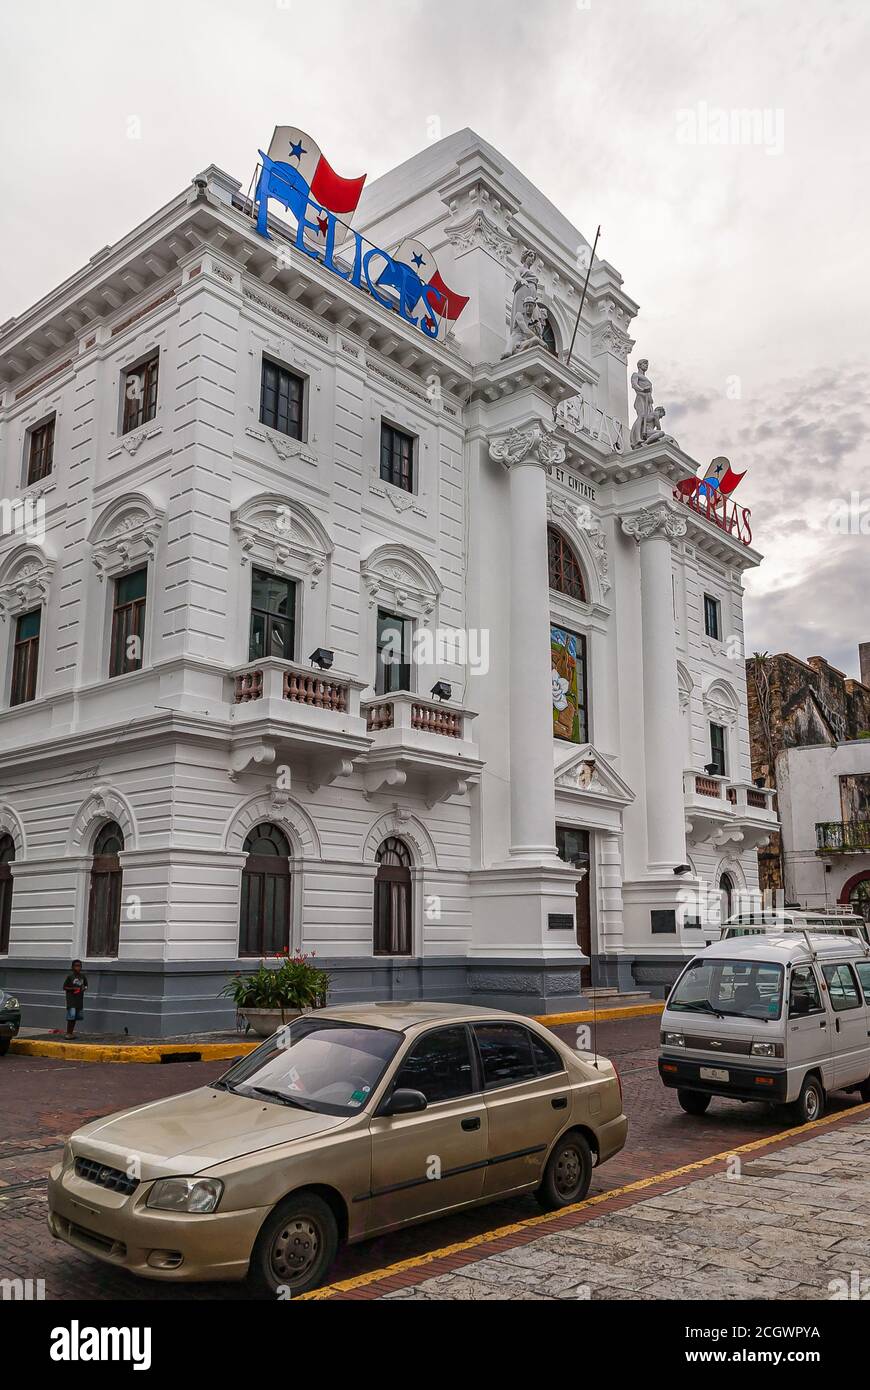 Città di Panama, Panama - 30 novembre 2008: Il vecchio municipio è un edificio storico bianco con bandiere e statue in cima sotto il paesaggio nuvoloso grigio. Le auto nel Foto Stock